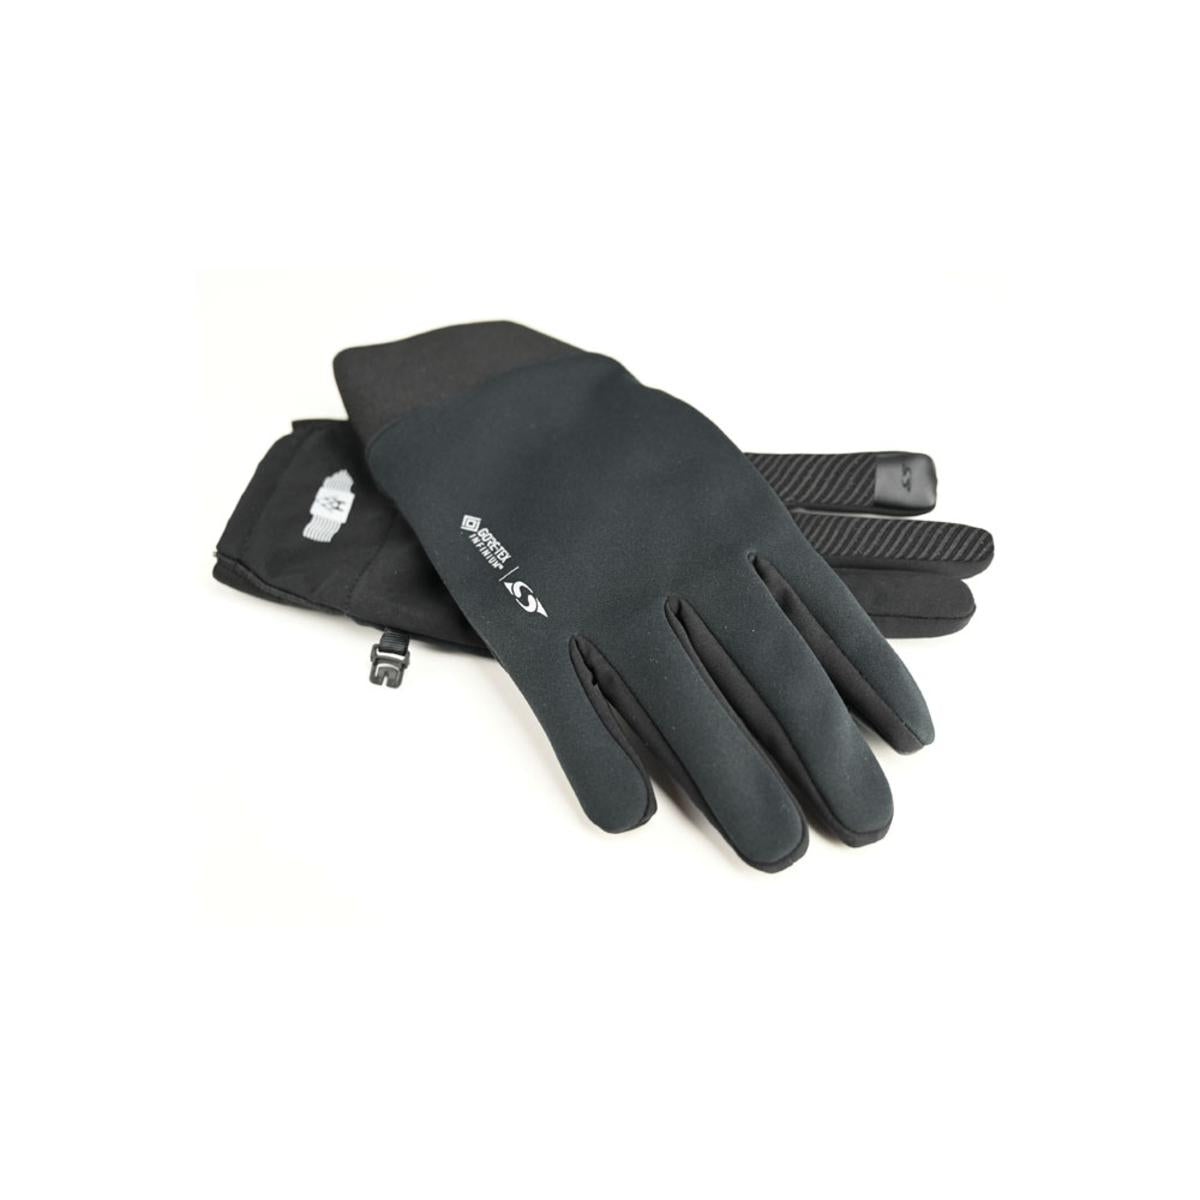 Seirus Women's Heatwave Gore-Tex Infinium ST Trace Gloves